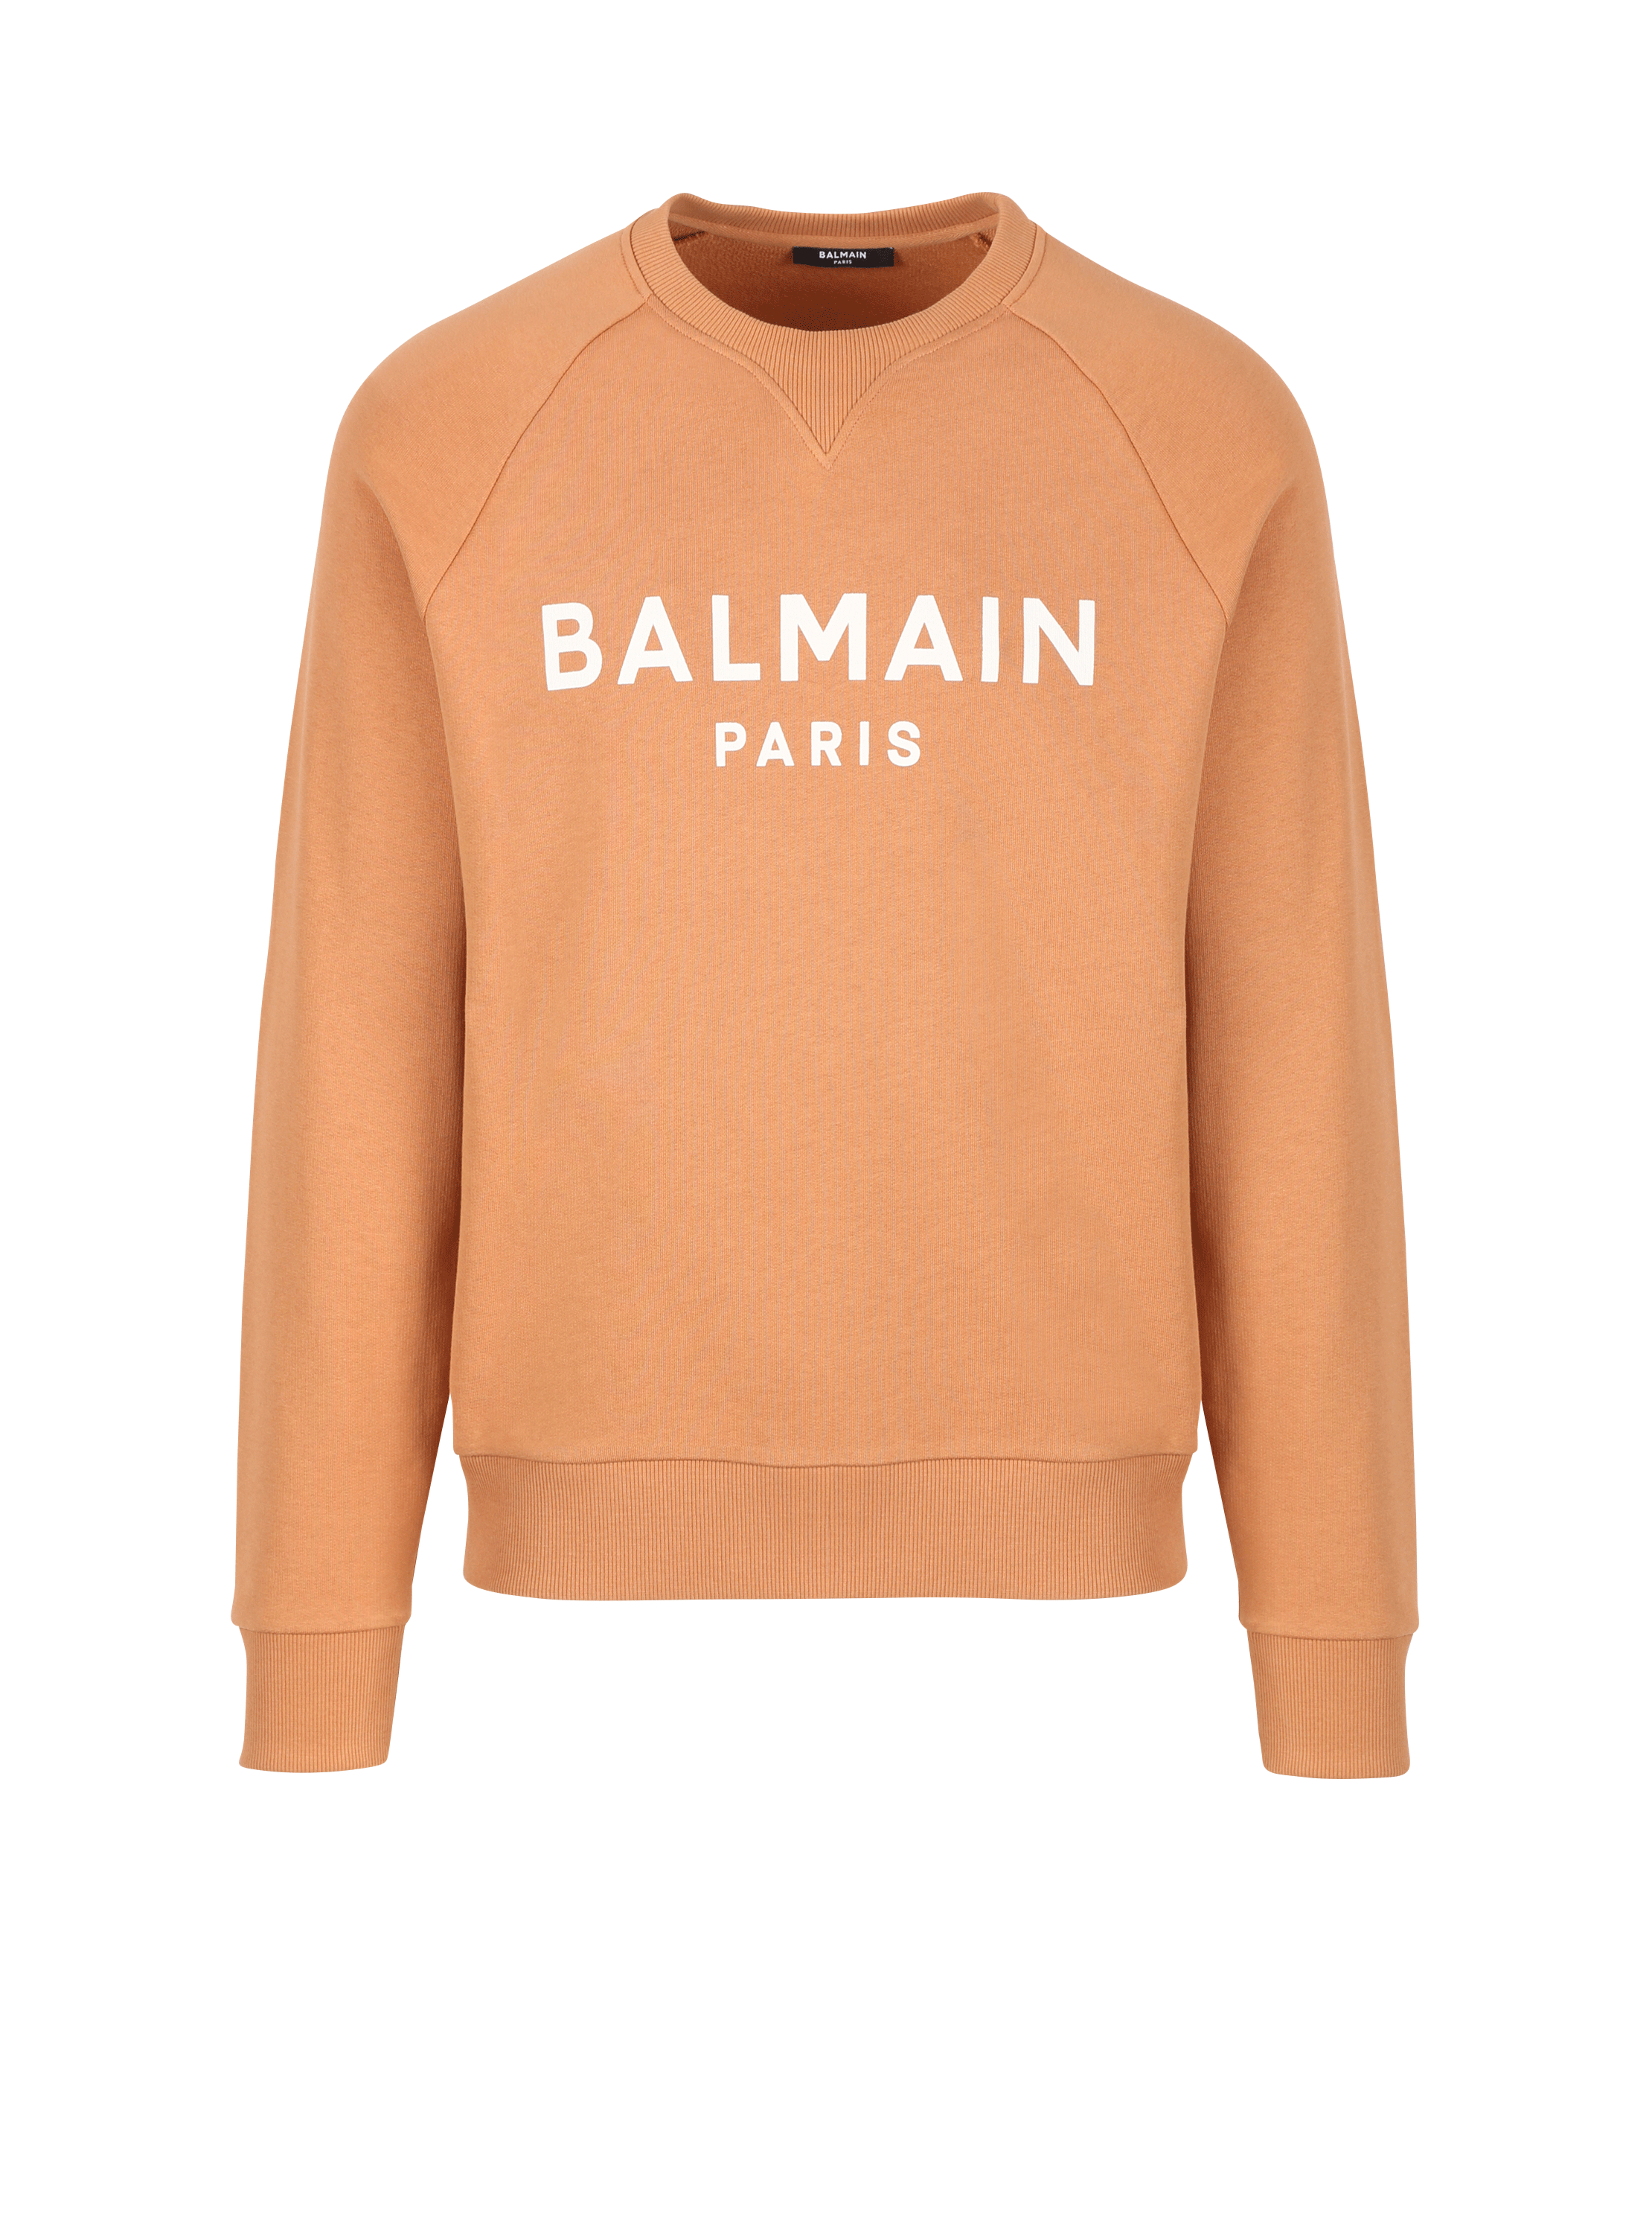 Sweatshirt mit Balmain Logo-Print